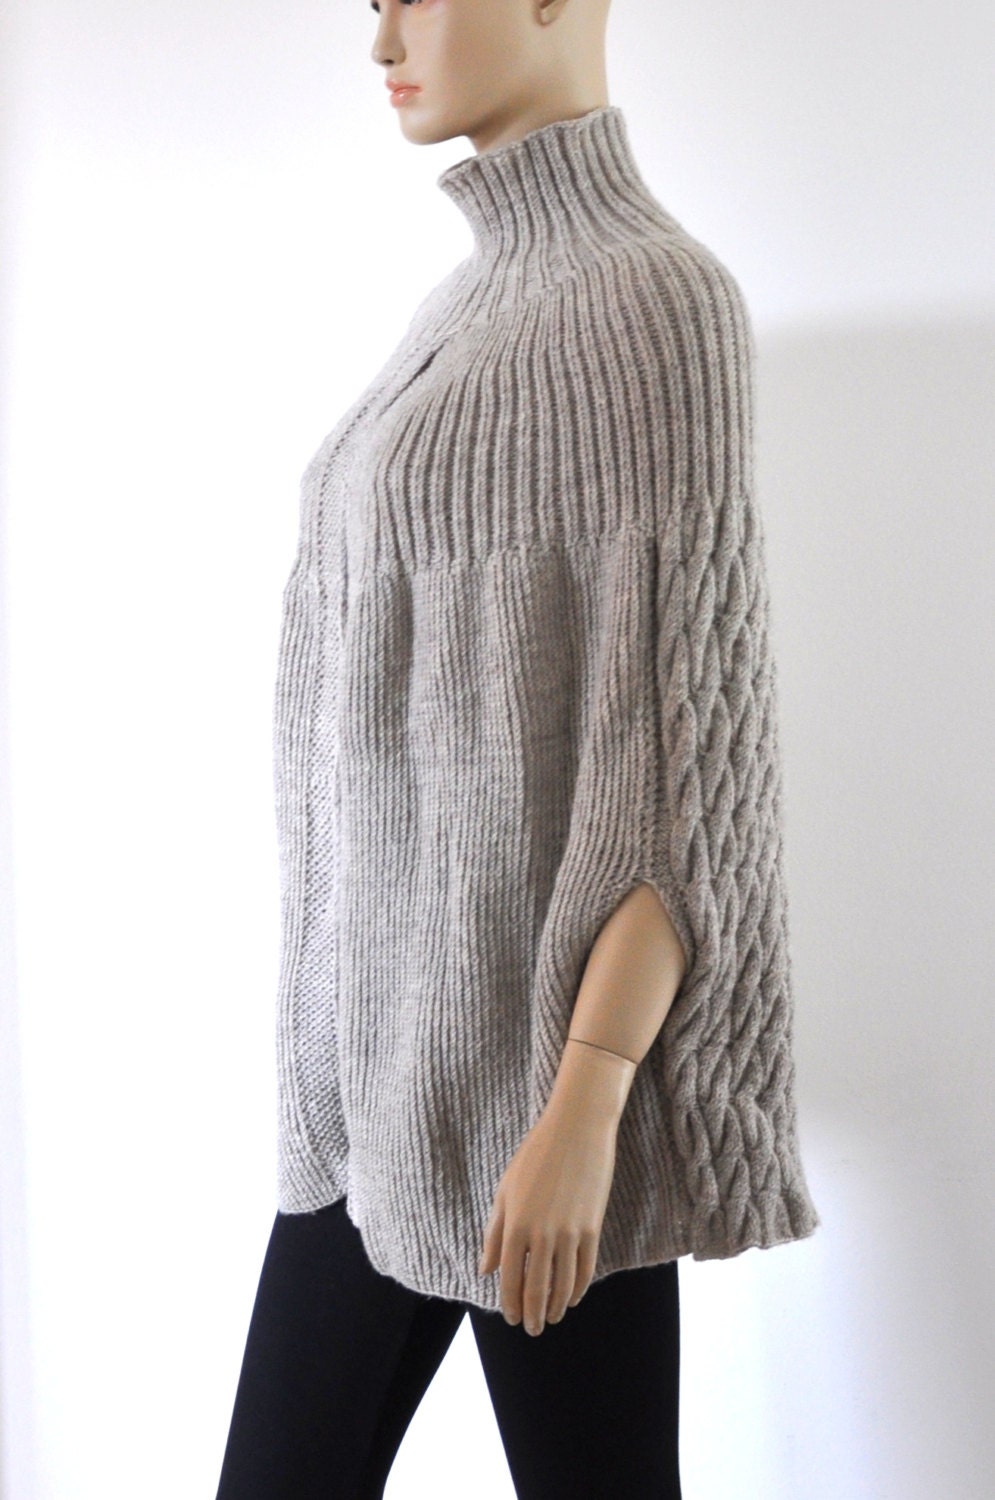 Oversized Poncho Sweater Beige Knit Cardigan Coat Chunky Wool - Etsy